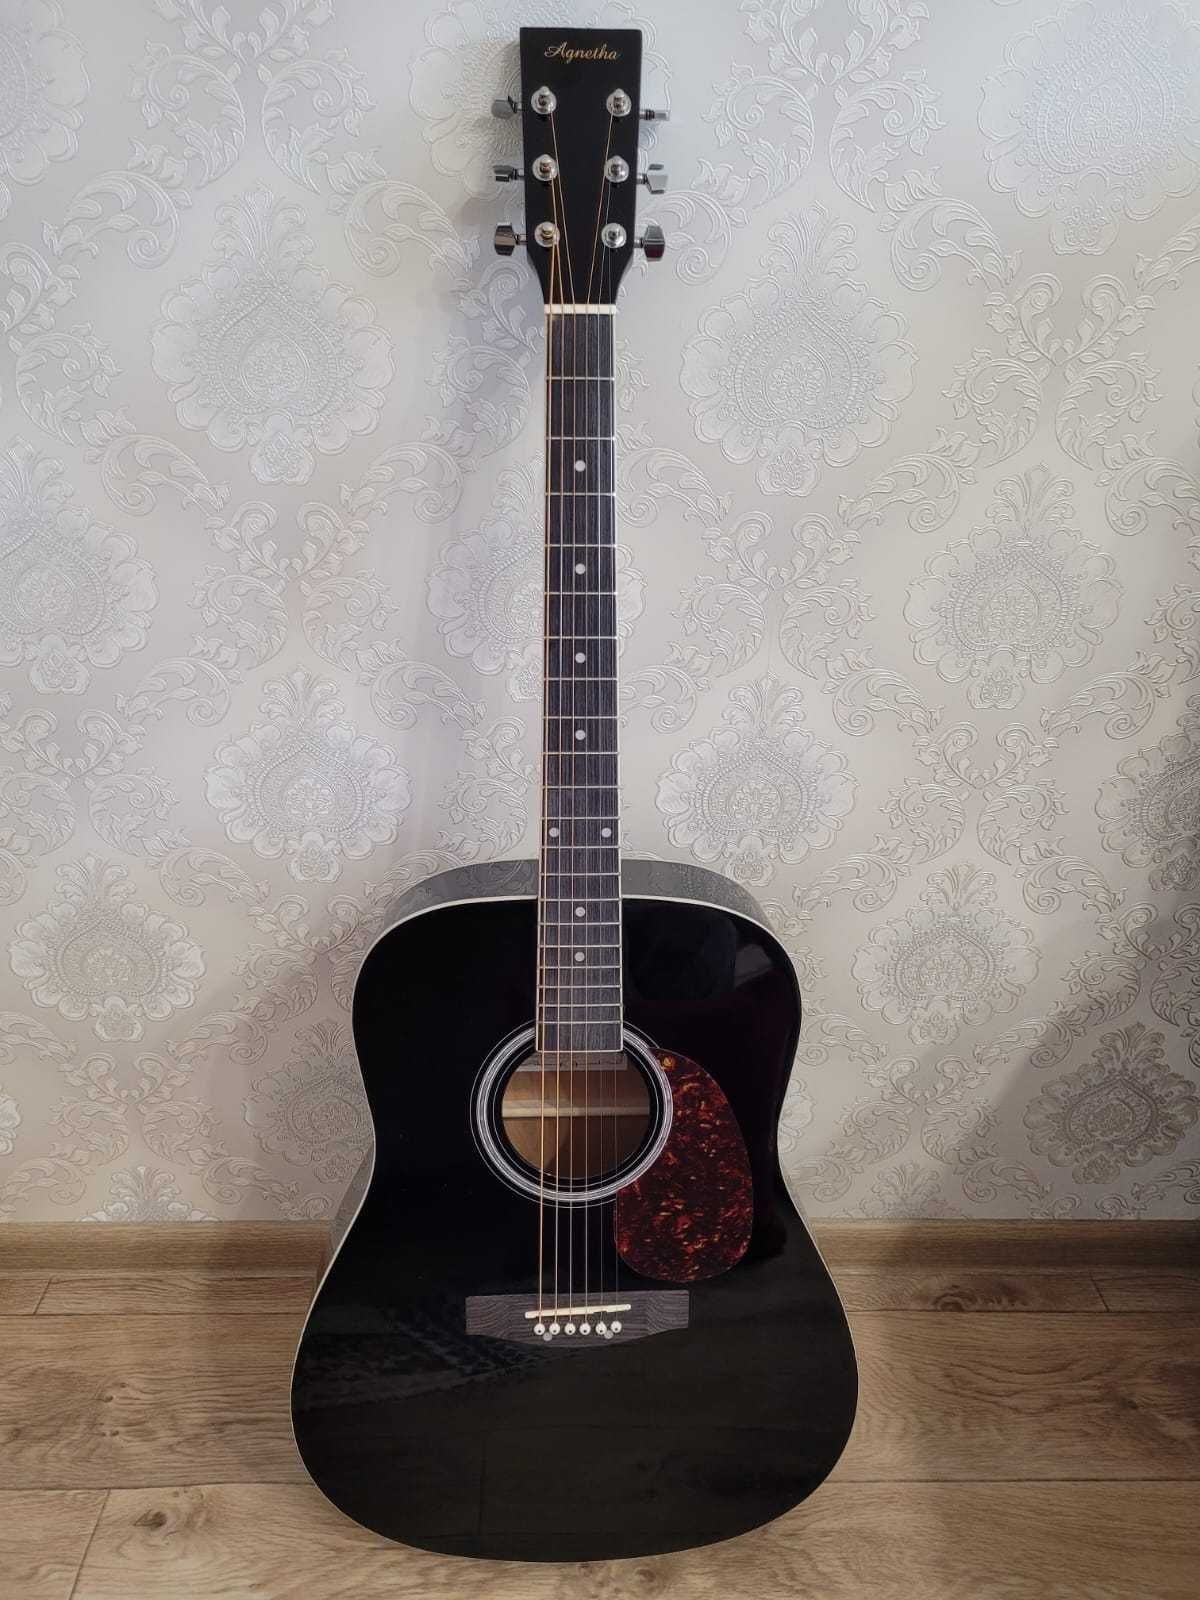 Гитара Agnetha, шестиструнная новая, производство Индонезия, с чехлом